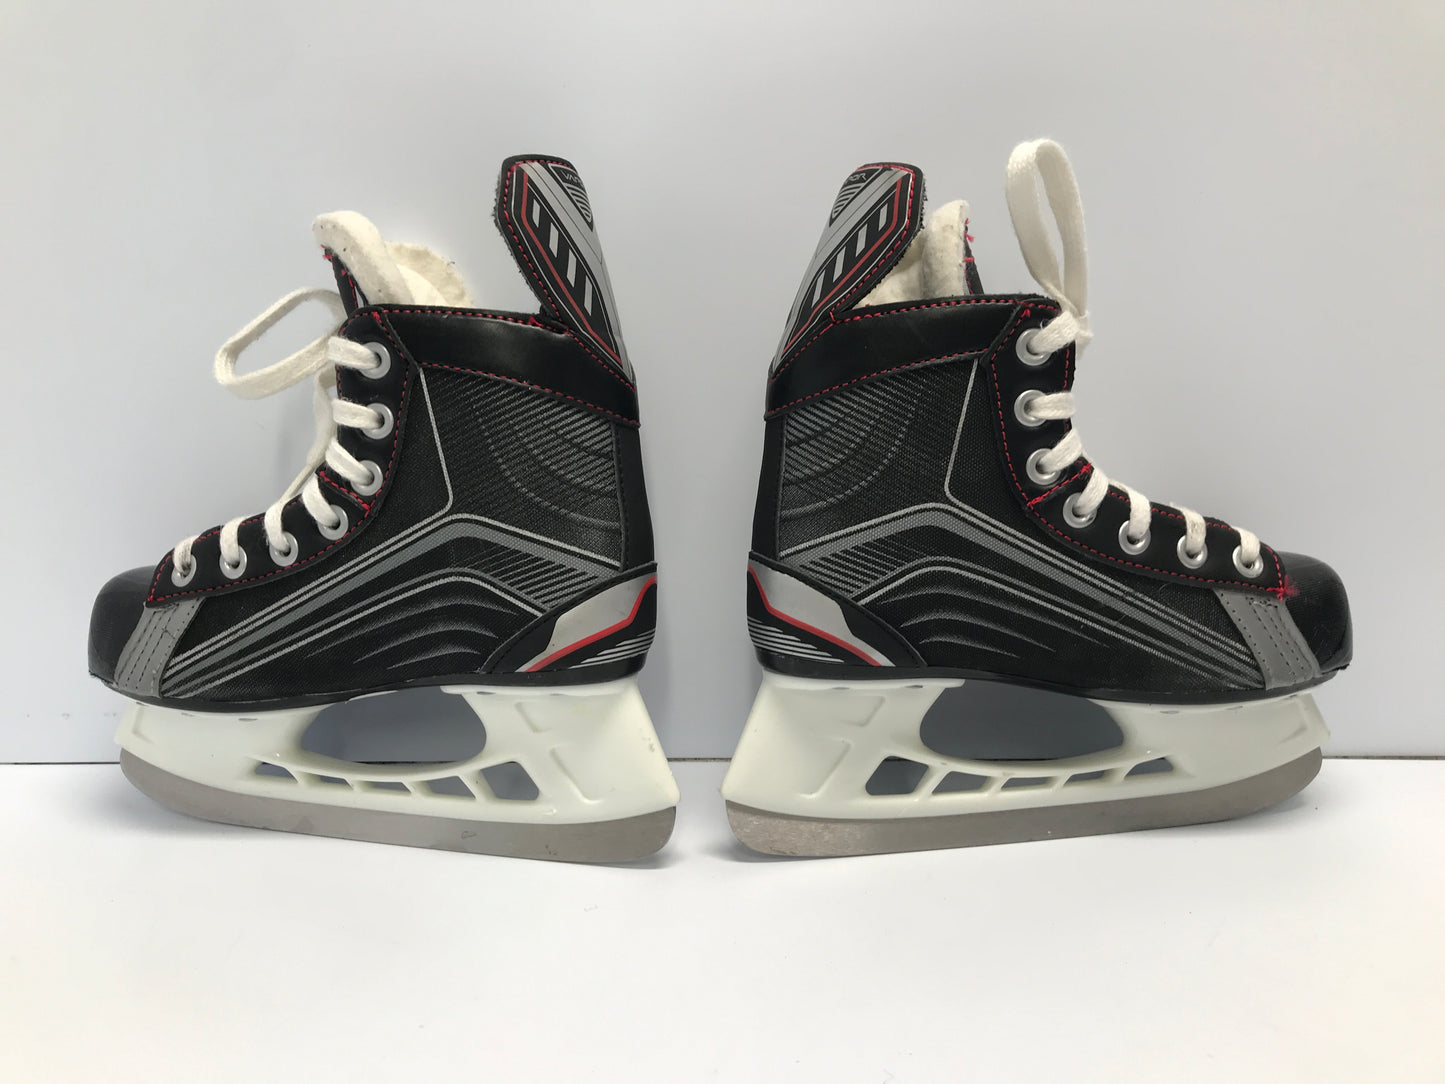 Hockey Skates Child Size 1 Shoe Size 13 Bauer Vapor New